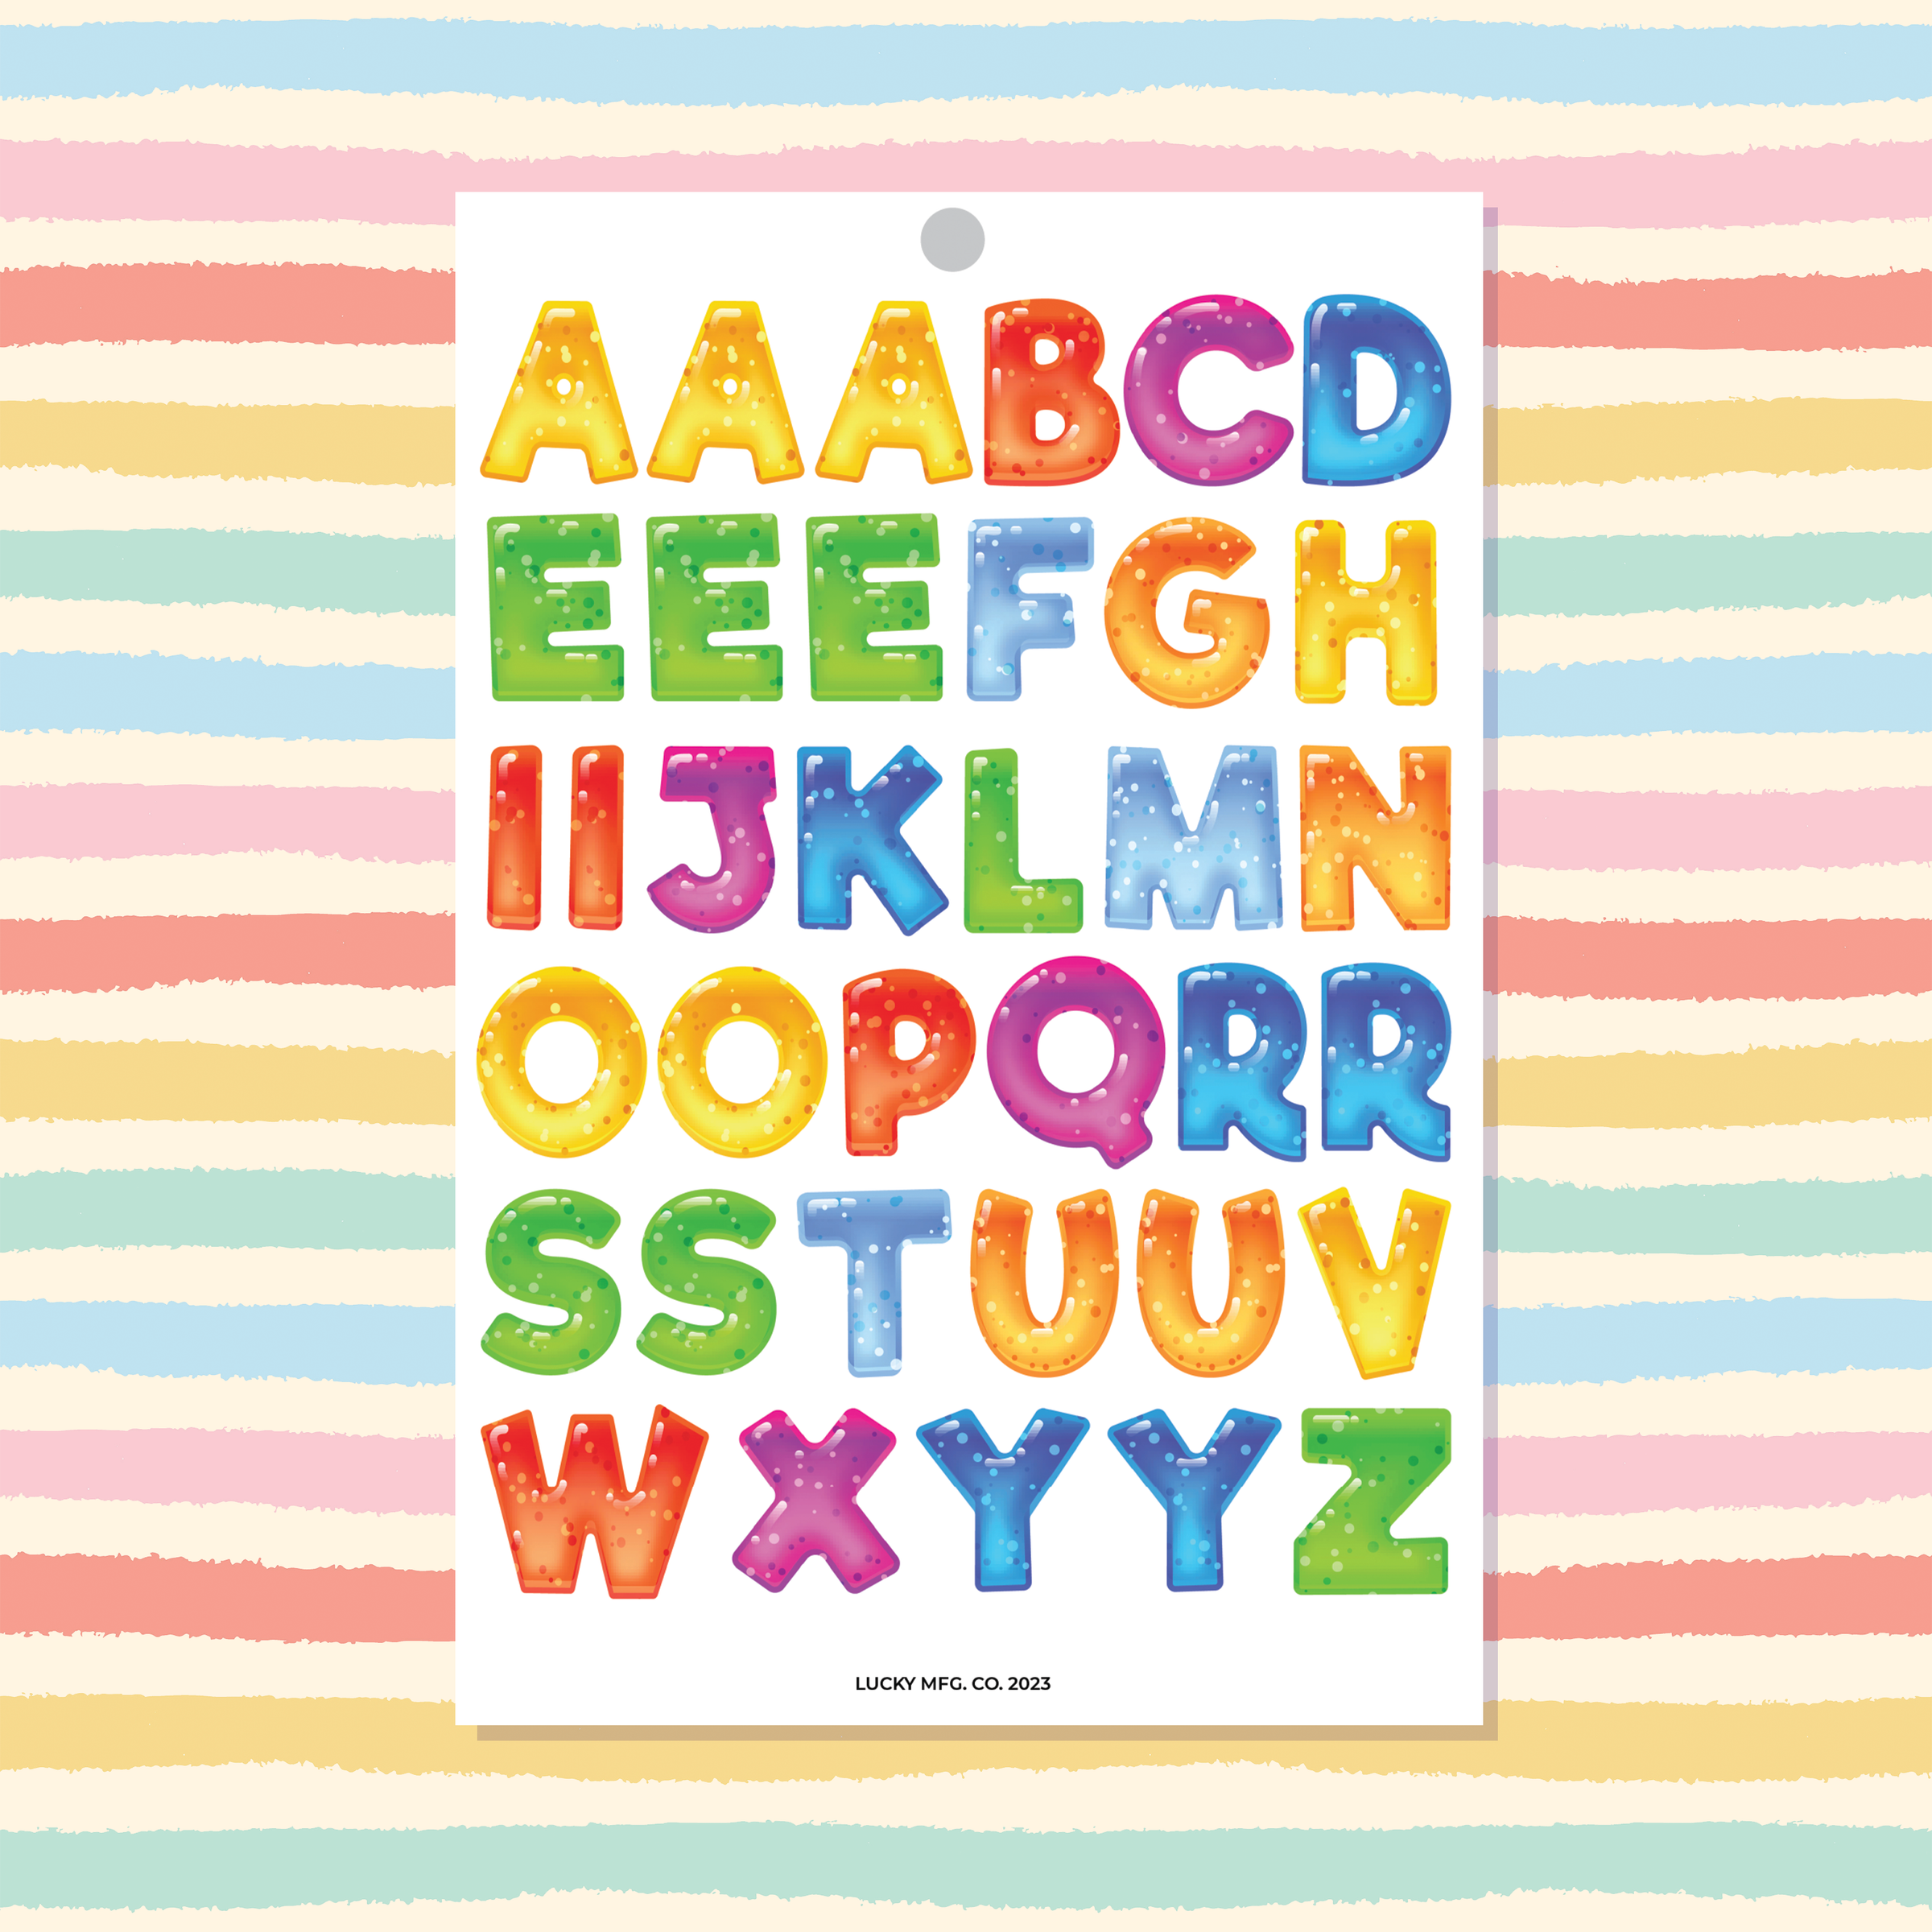 Small Rainbow Bubble Letter Alphabet Stickers – Shine Sticker Studio